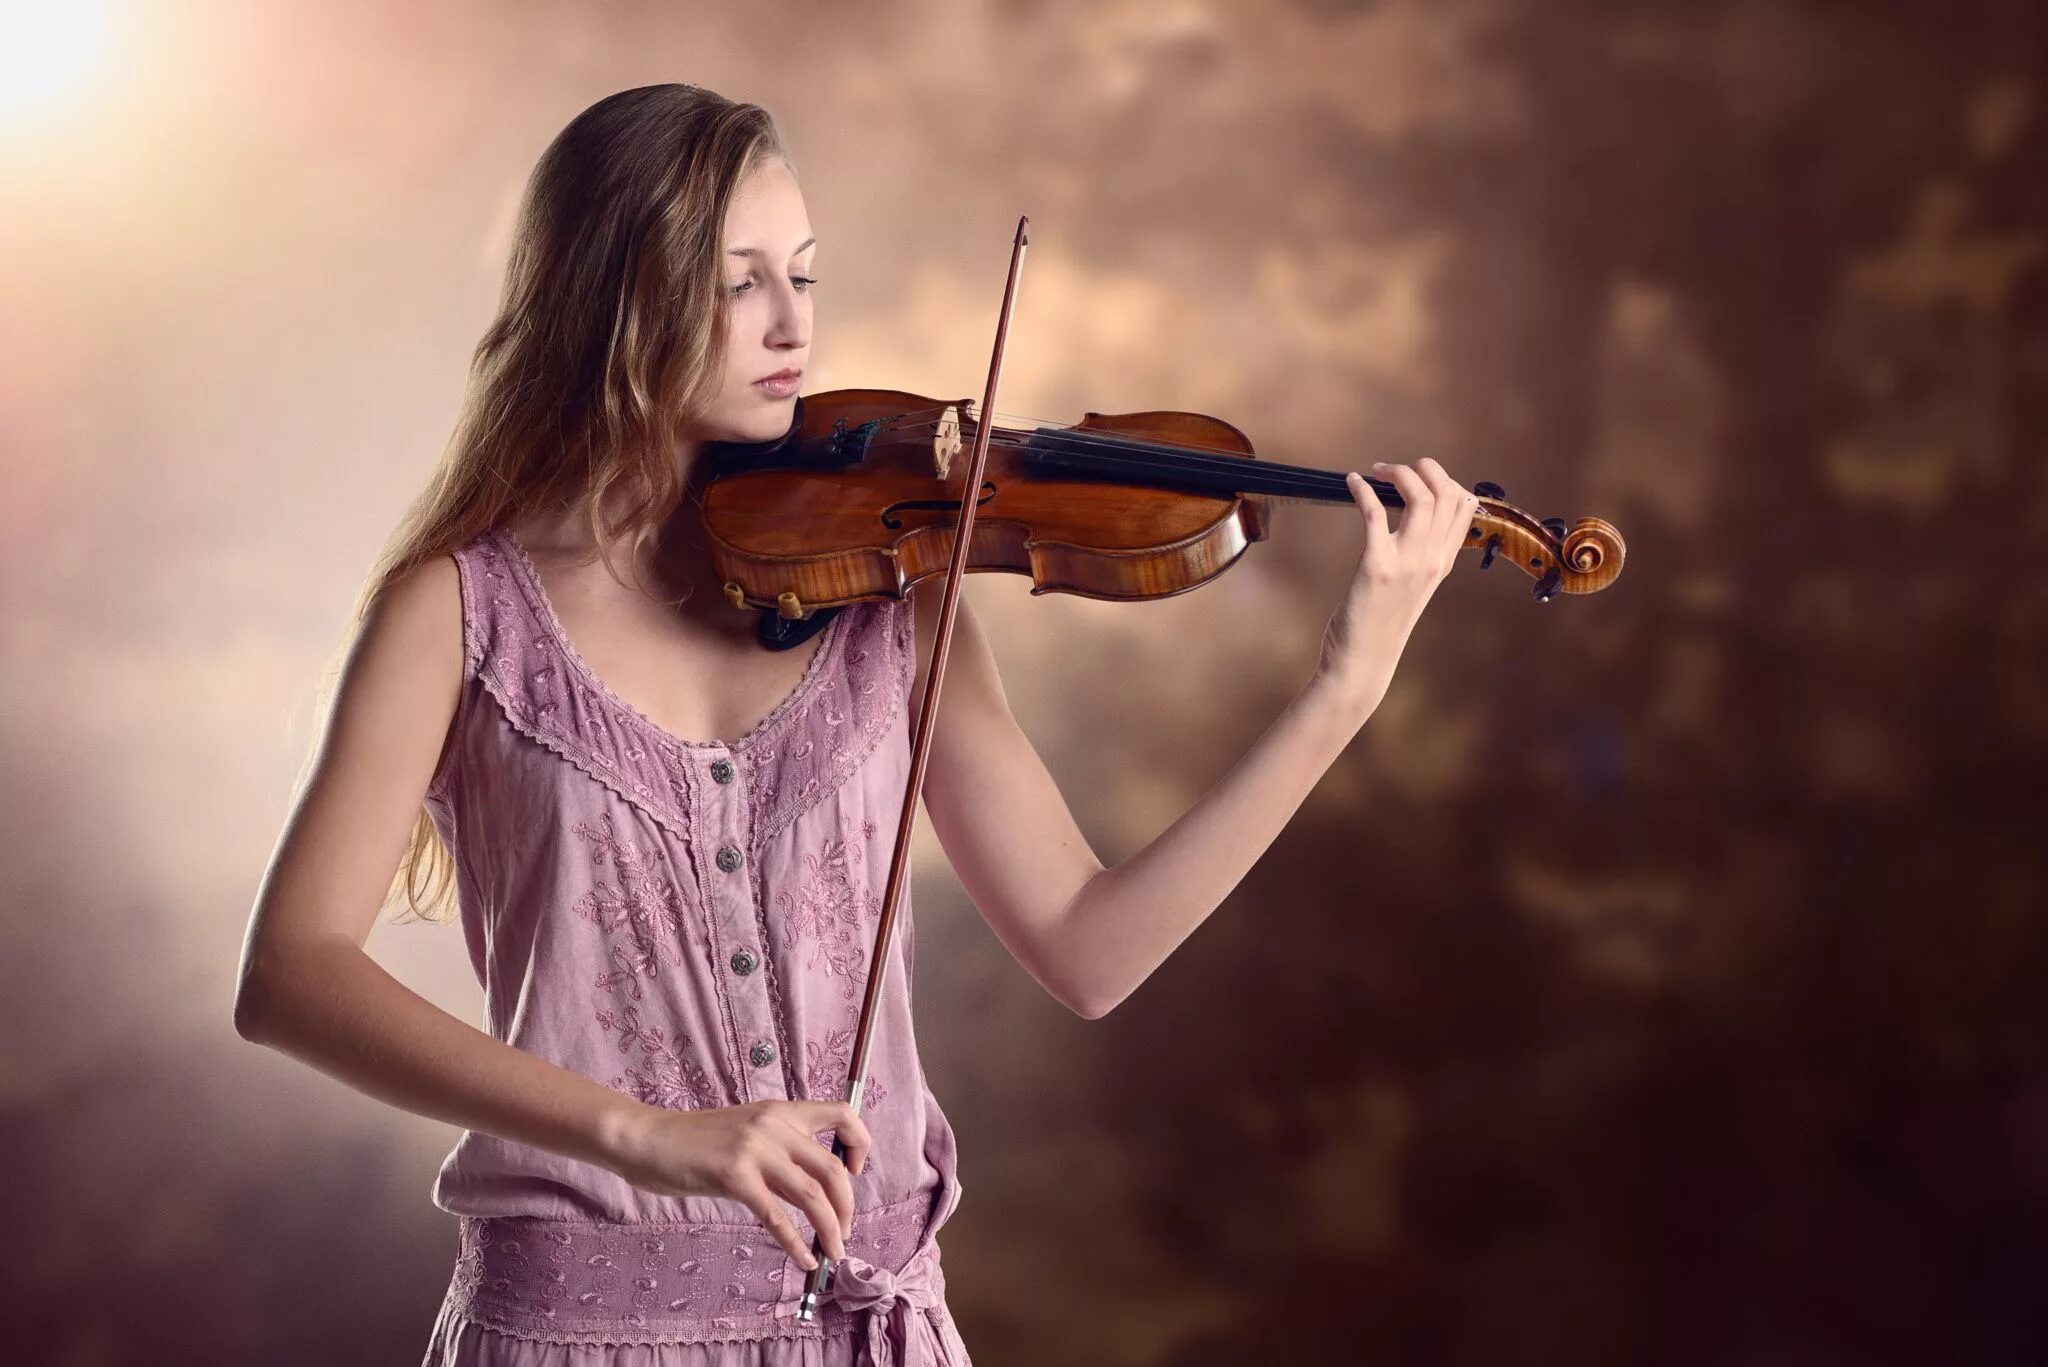 Скрипка из полин. Юный скрипач. Скрипка в женских руках. Скрипачи женщины Франции. Юный скрипач в осеннем парке.